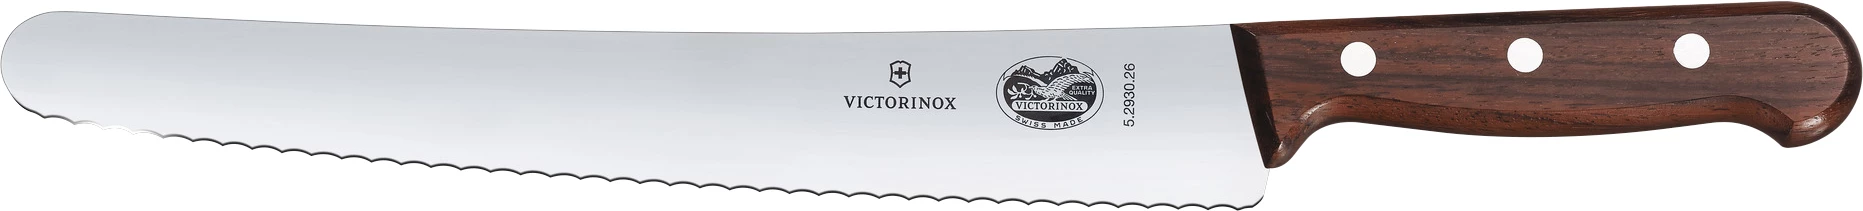 Victorinox brødkniv med træskaft, buet, 26 cm